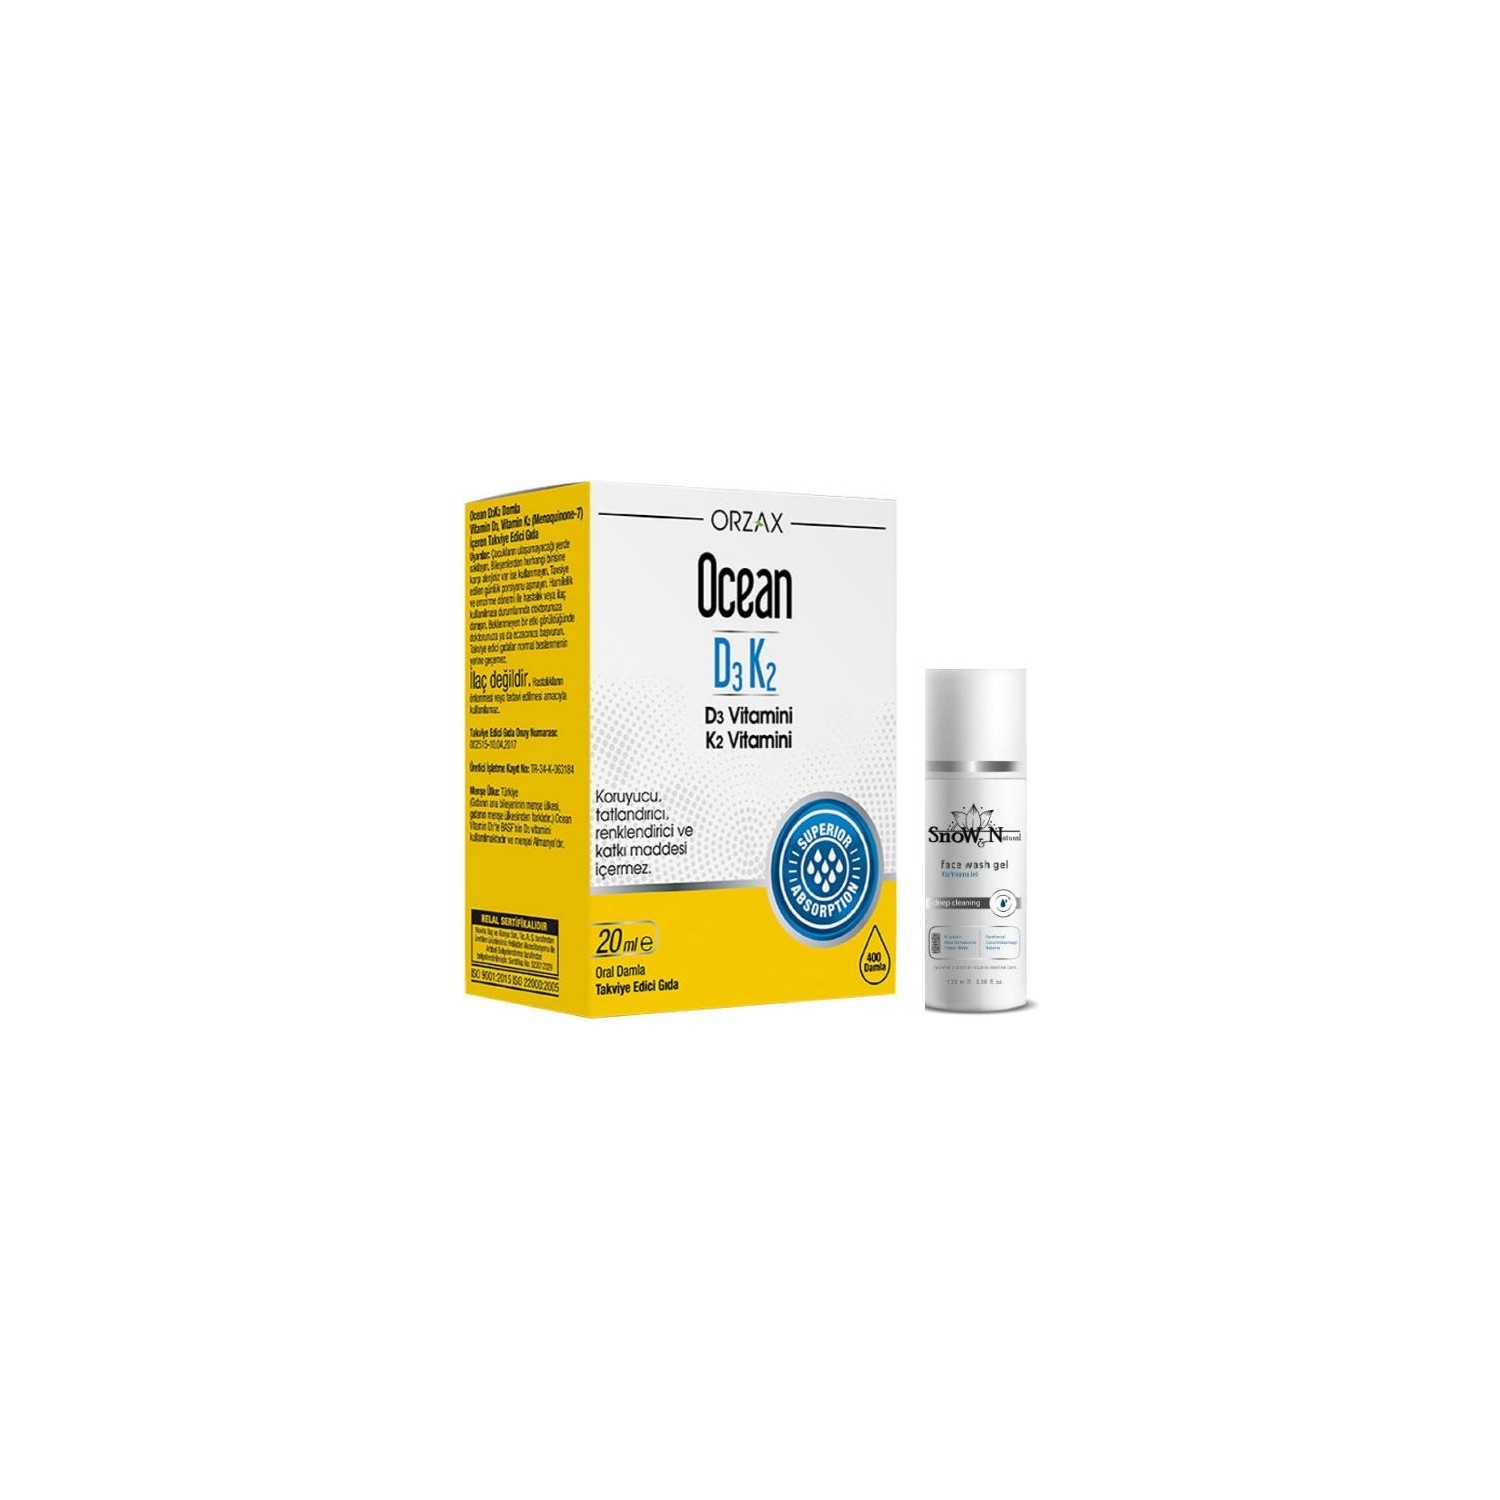 витаминные капли d3 k2 orzax 3 флакона по 20 мл Витаминные капли D3 / K2 Orzax, 20 мл + Очищающий гель Orzax для лица, 100 мл